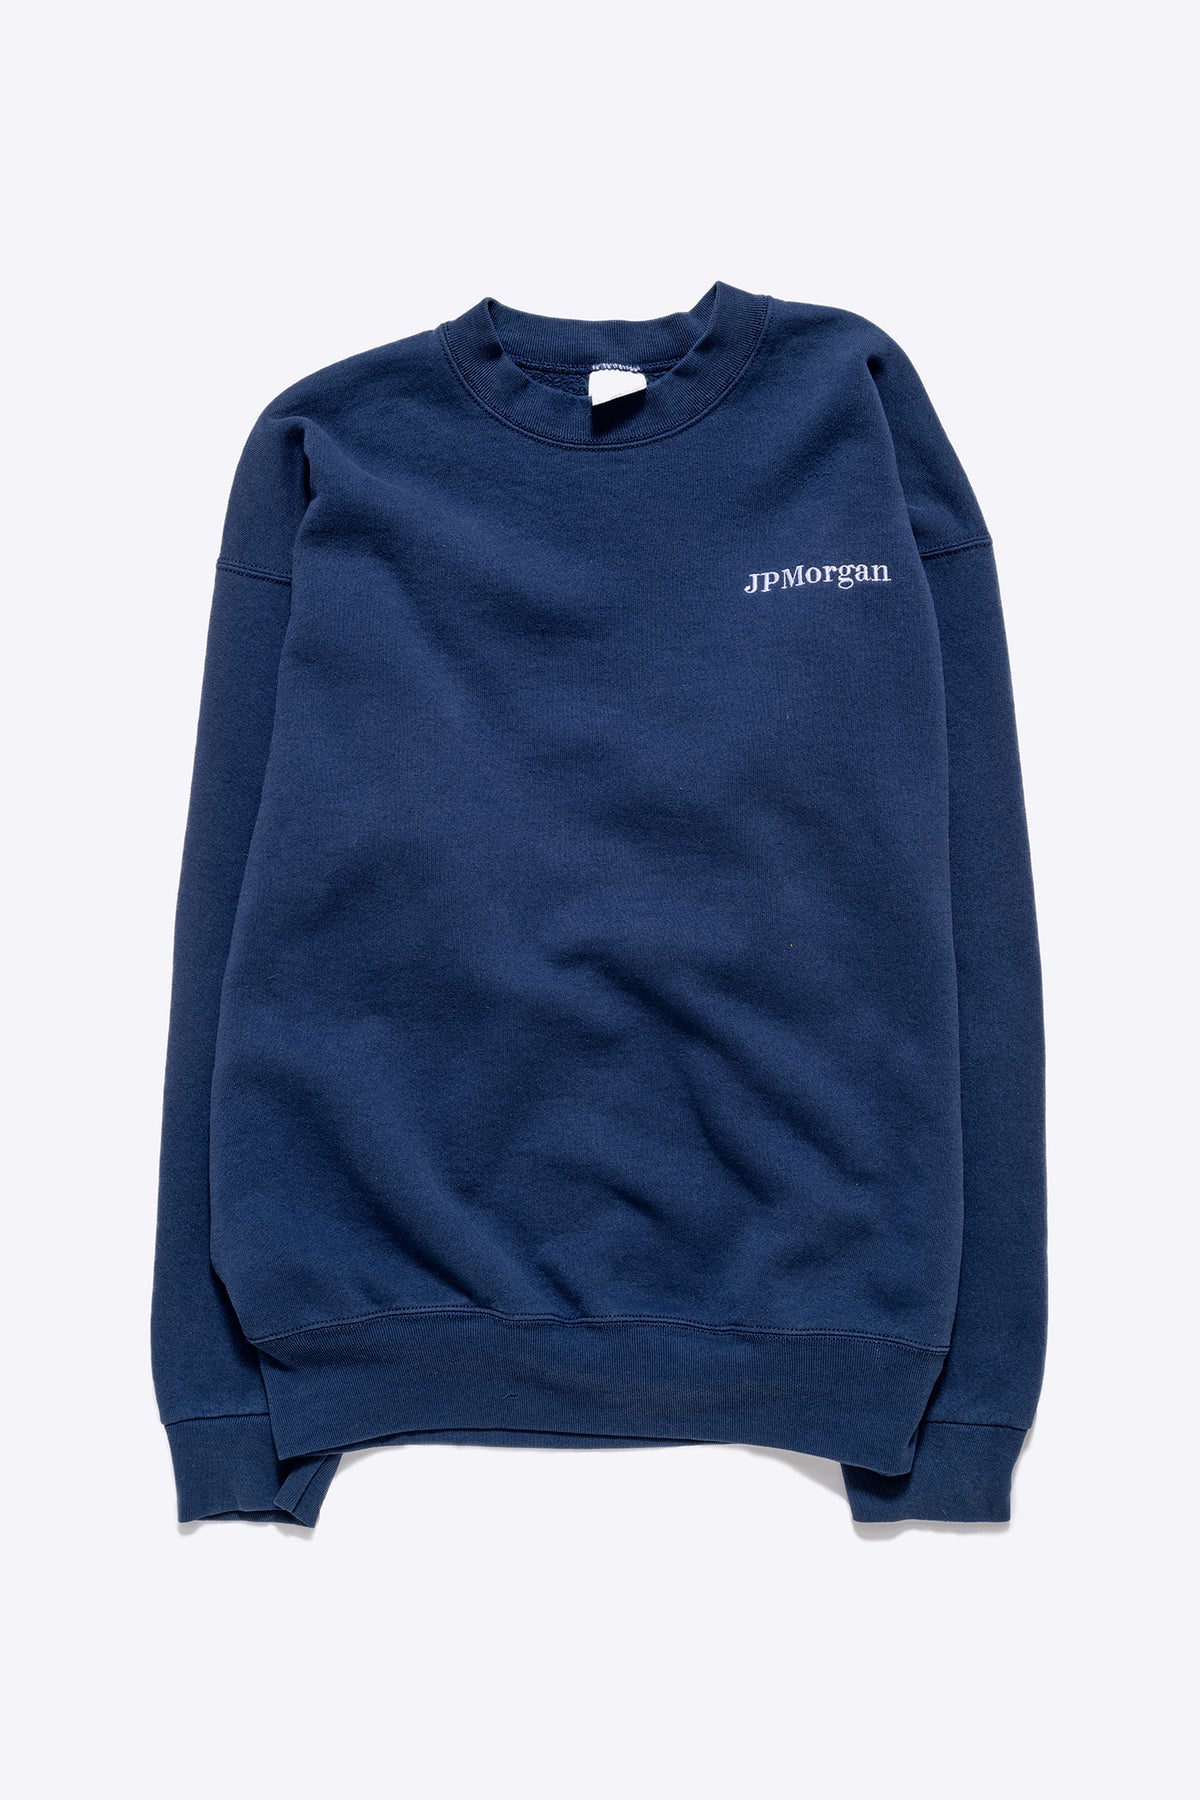 JP Morgan Vintage Crewneck Sweatshirt